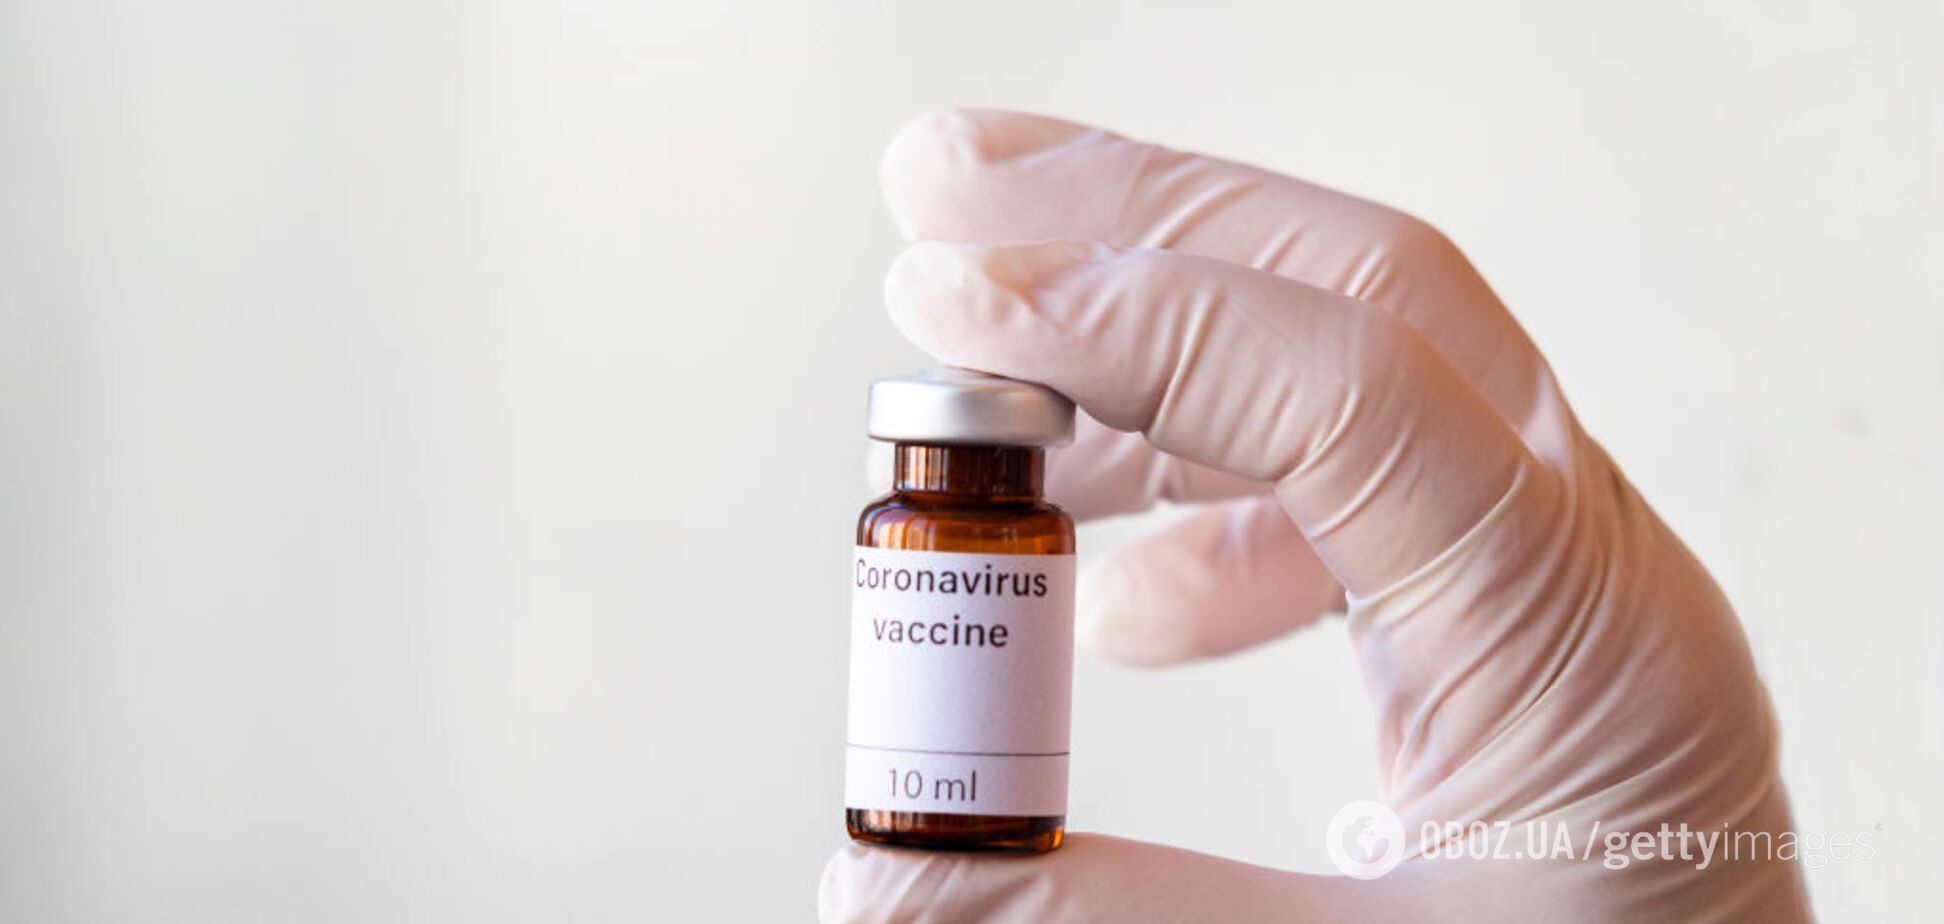 Вакцина от коронавируса появится минимум через год - ВОЗ